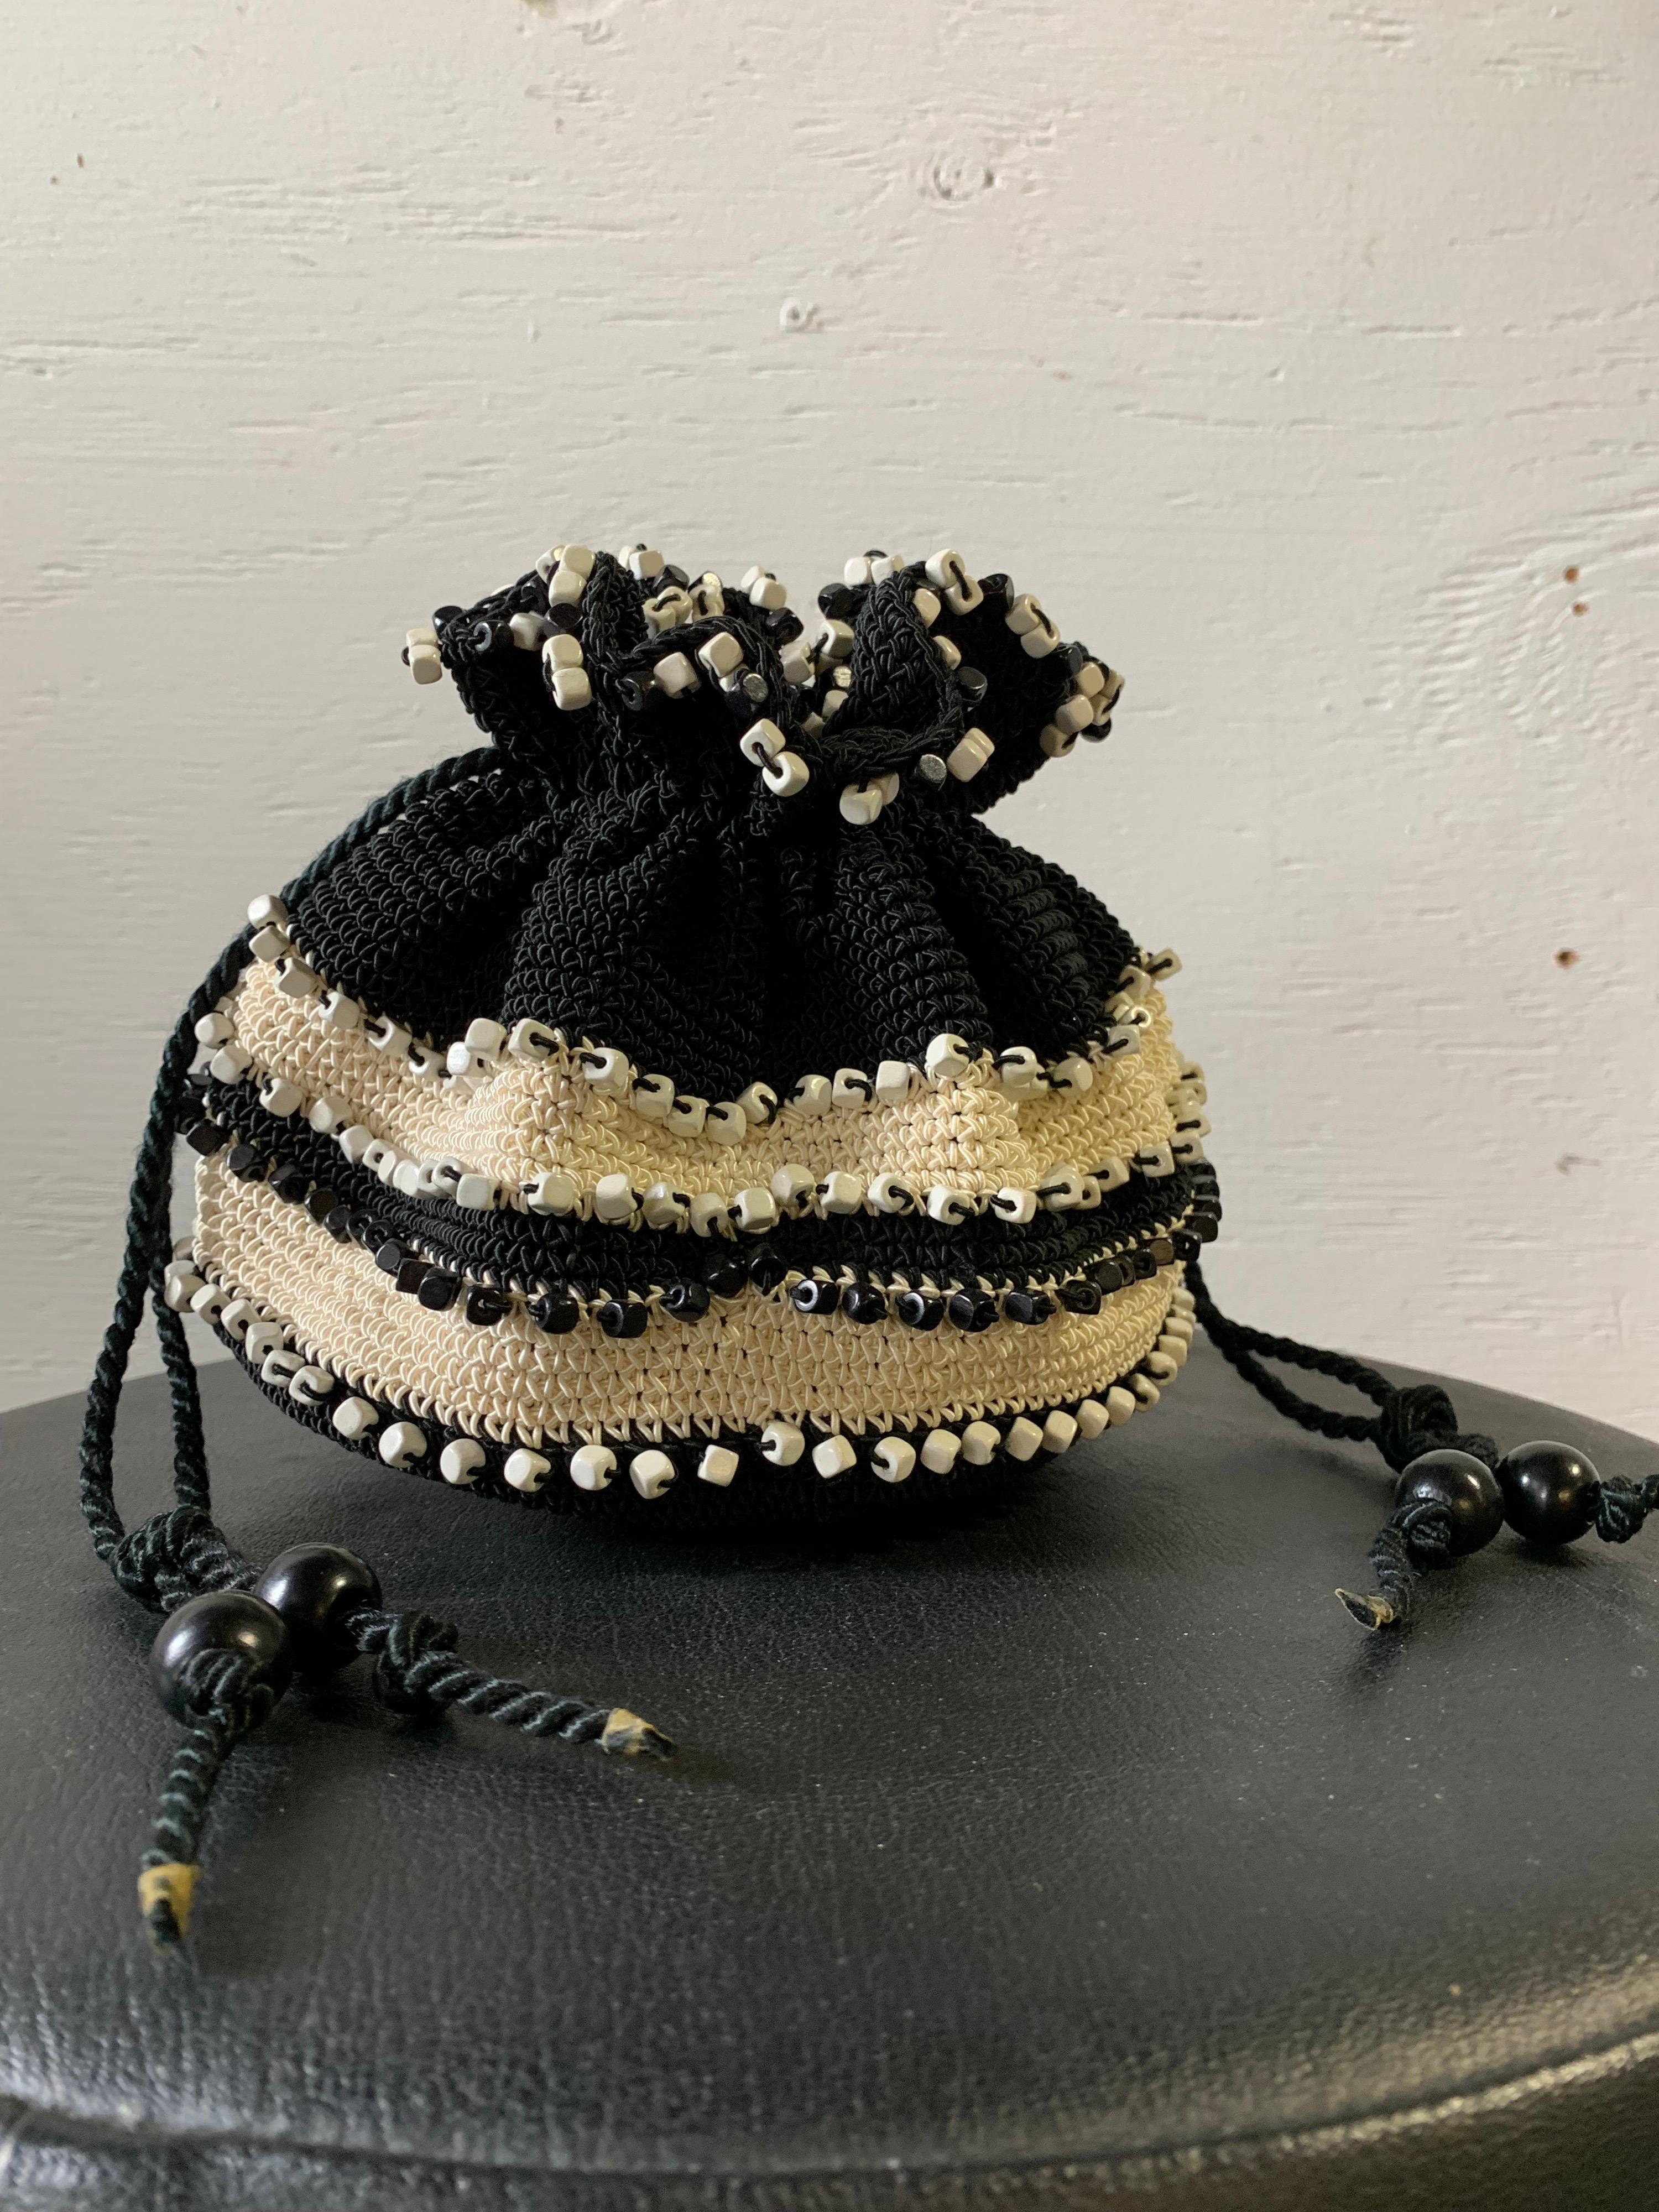 1950s Black & Cream Crochet Drawstring Pouch Handbag W Stripes & Square Beads. Bullseye-resin bottom. 